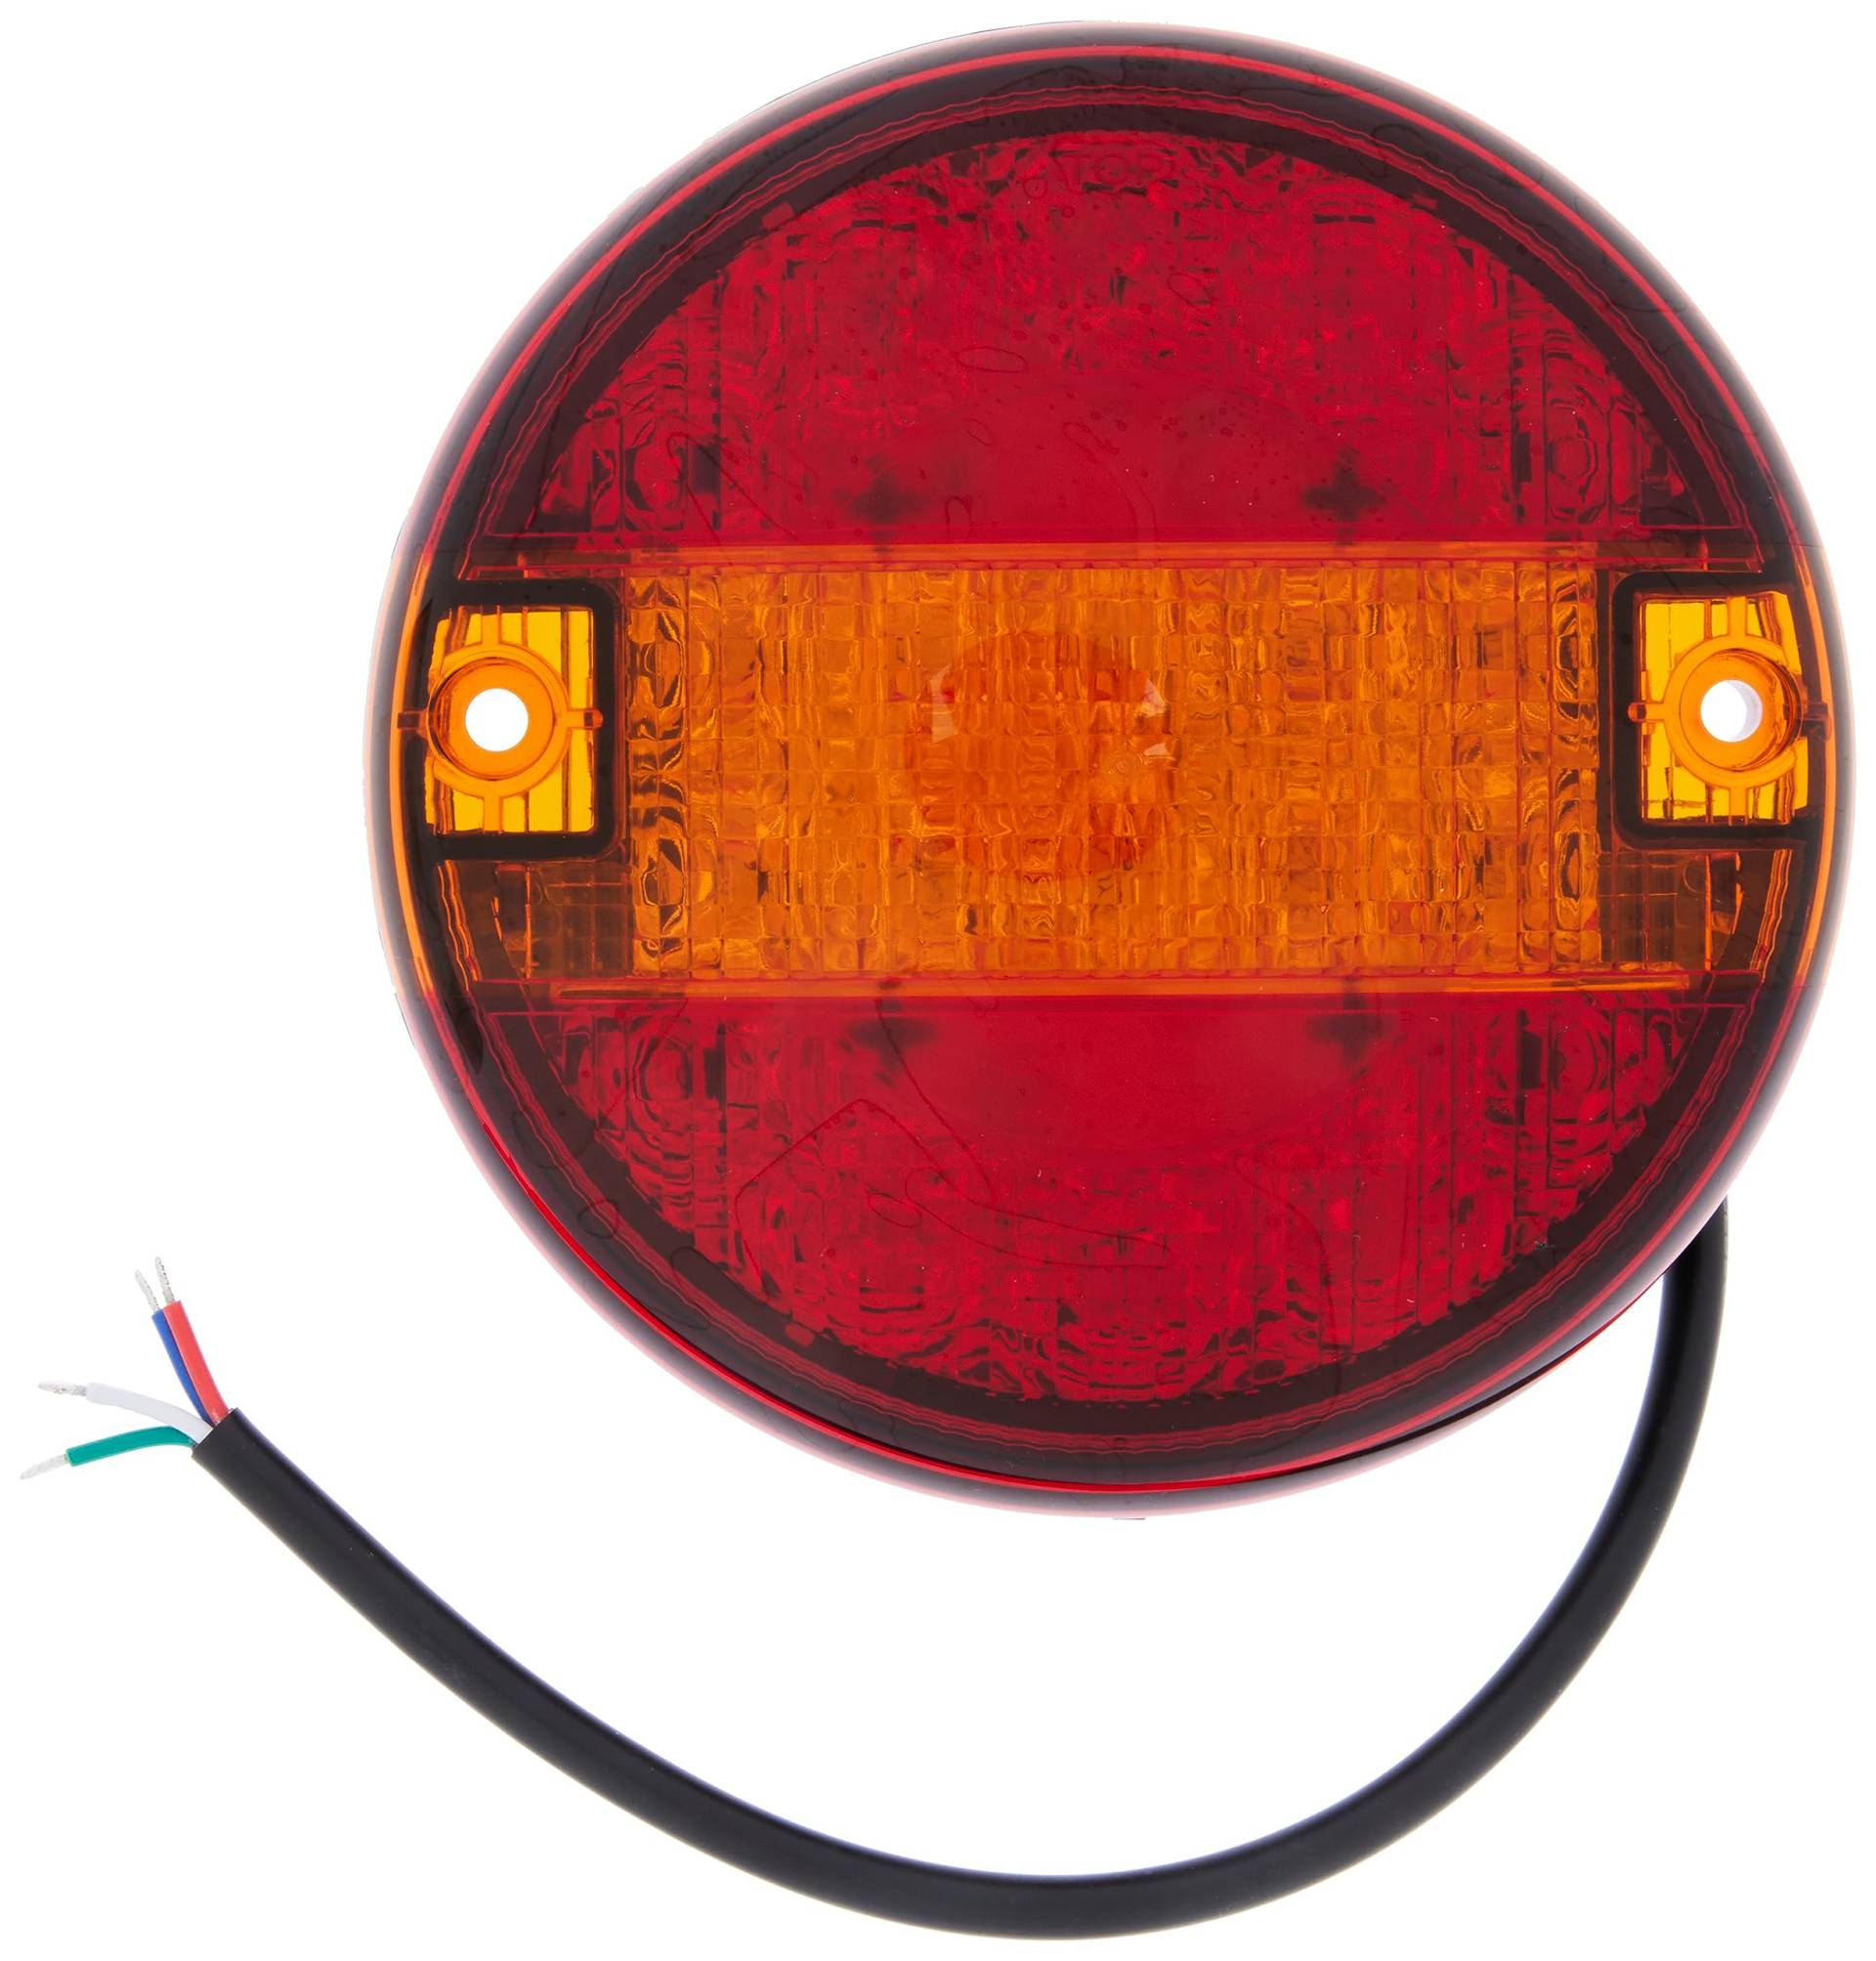 HELLA VALUEFIT Rückleuchte - LED - Anhänger Beleuchtung - 12V / 24V - Anbau/geschraubt - ECE - Lichtscheibenfarbe: rot/gelb - Stecker: Flachstecker - links/rechts - Menge: 1 - 2SD 357 026-001 von Hella